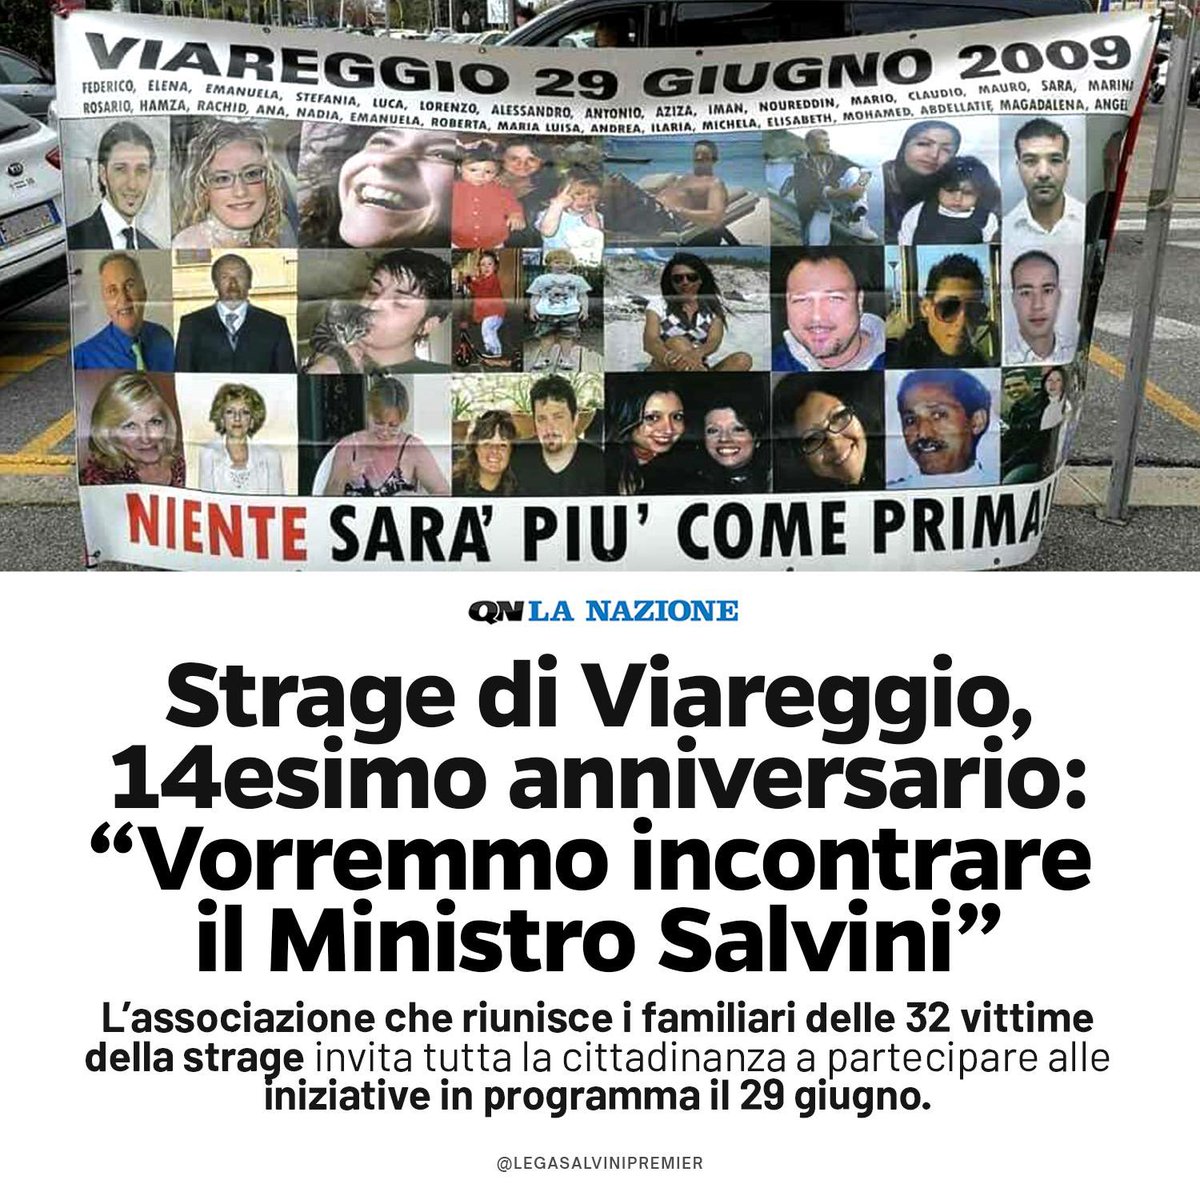 14 anni fa avveniva la strage dell’incidente ferroviario di Viareggio, un dramma che portò via trentadue persone e fermò l’Italia intera.
Incontrerò presto i familiari delle vittime che, ancora oggi, chiedono Giustizia.